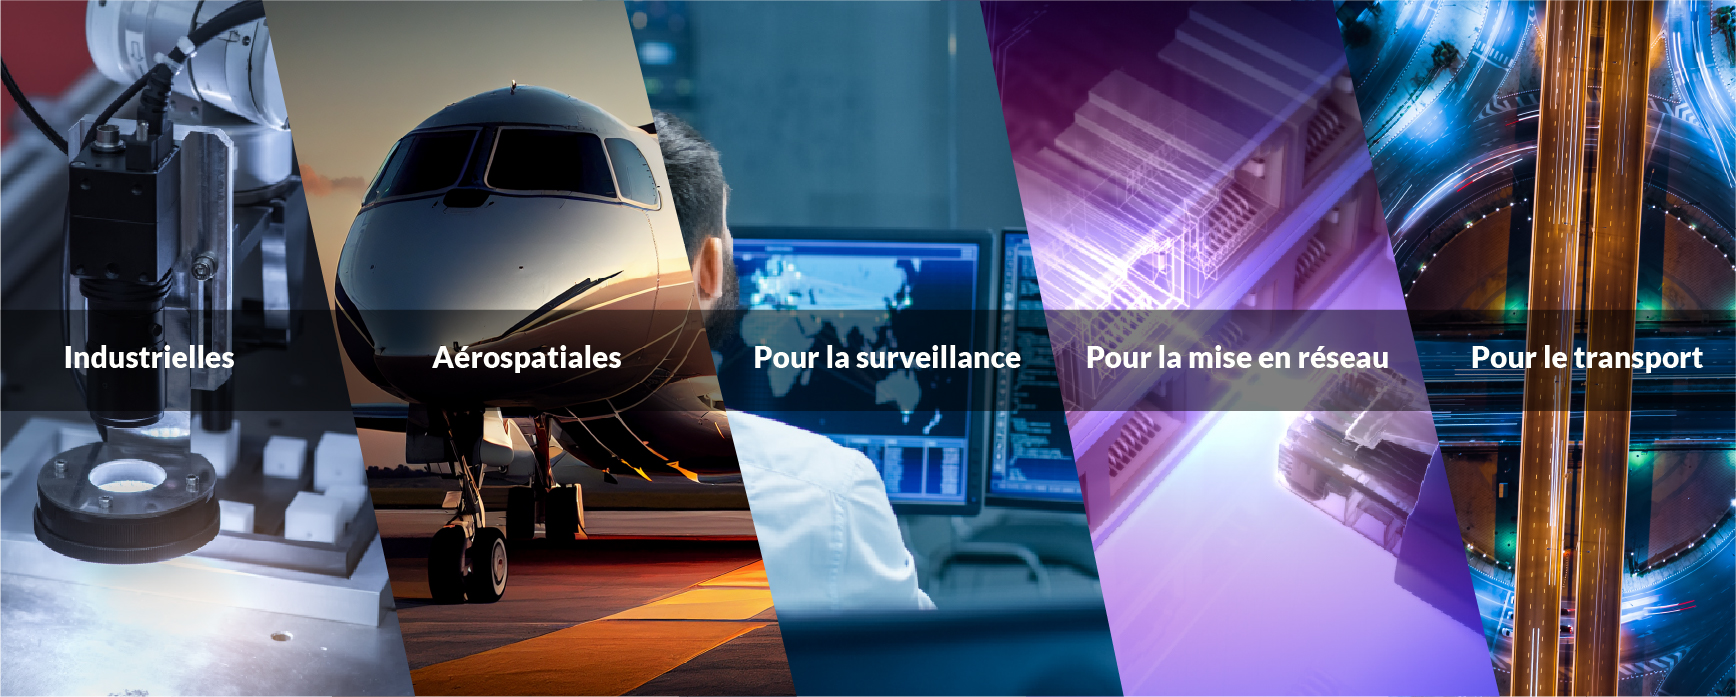 Industrielles / Aérospatiales / Pour la surveillance / Pour la mise en réseau / Pour le transport